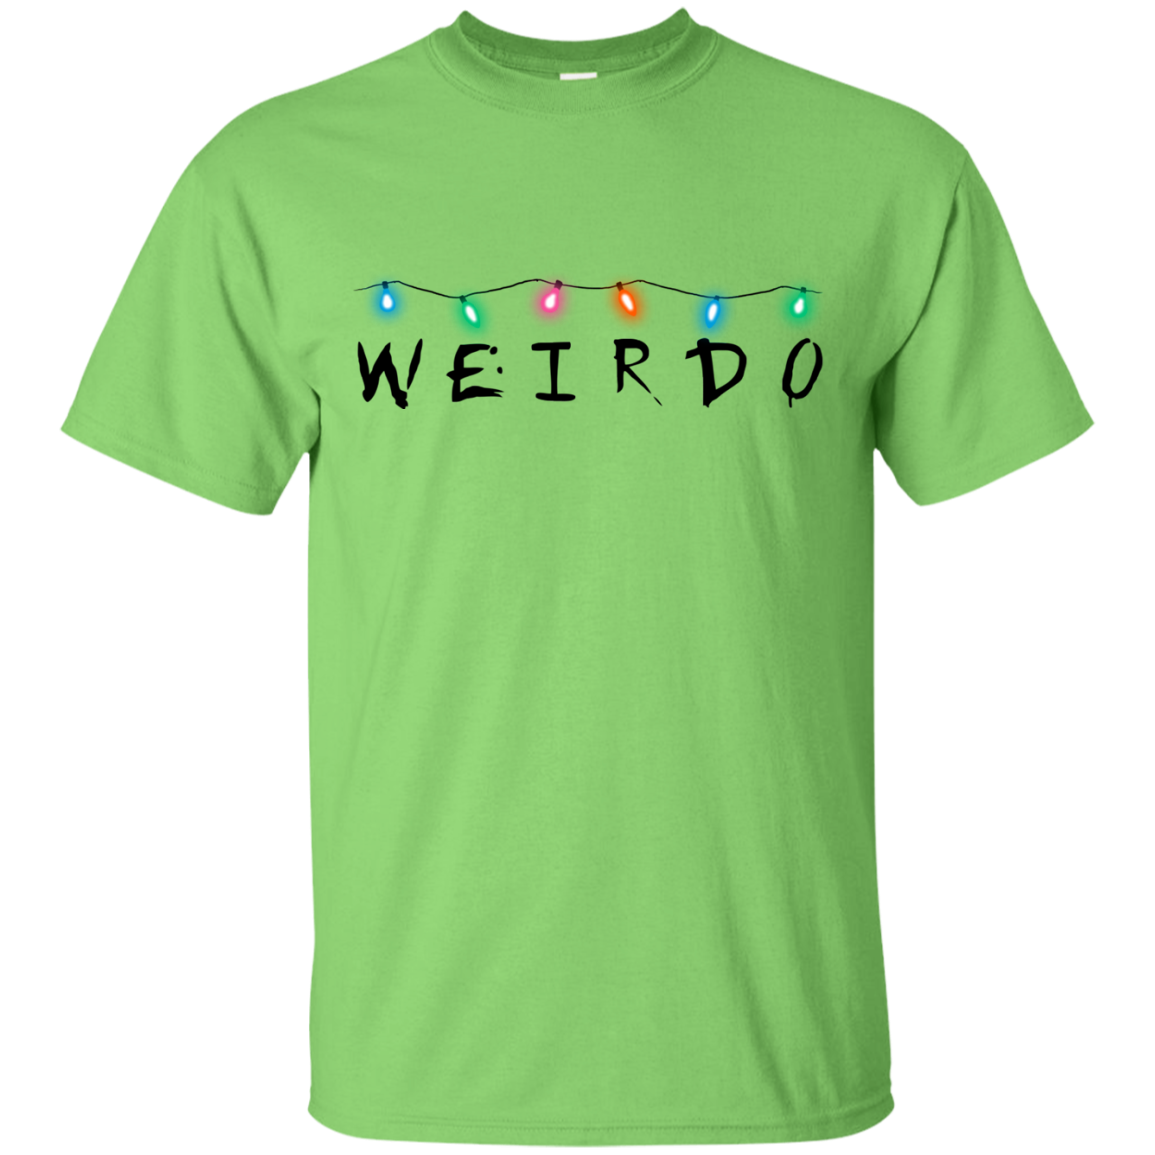 Weirdo T-Shirt – Pop Up Tee